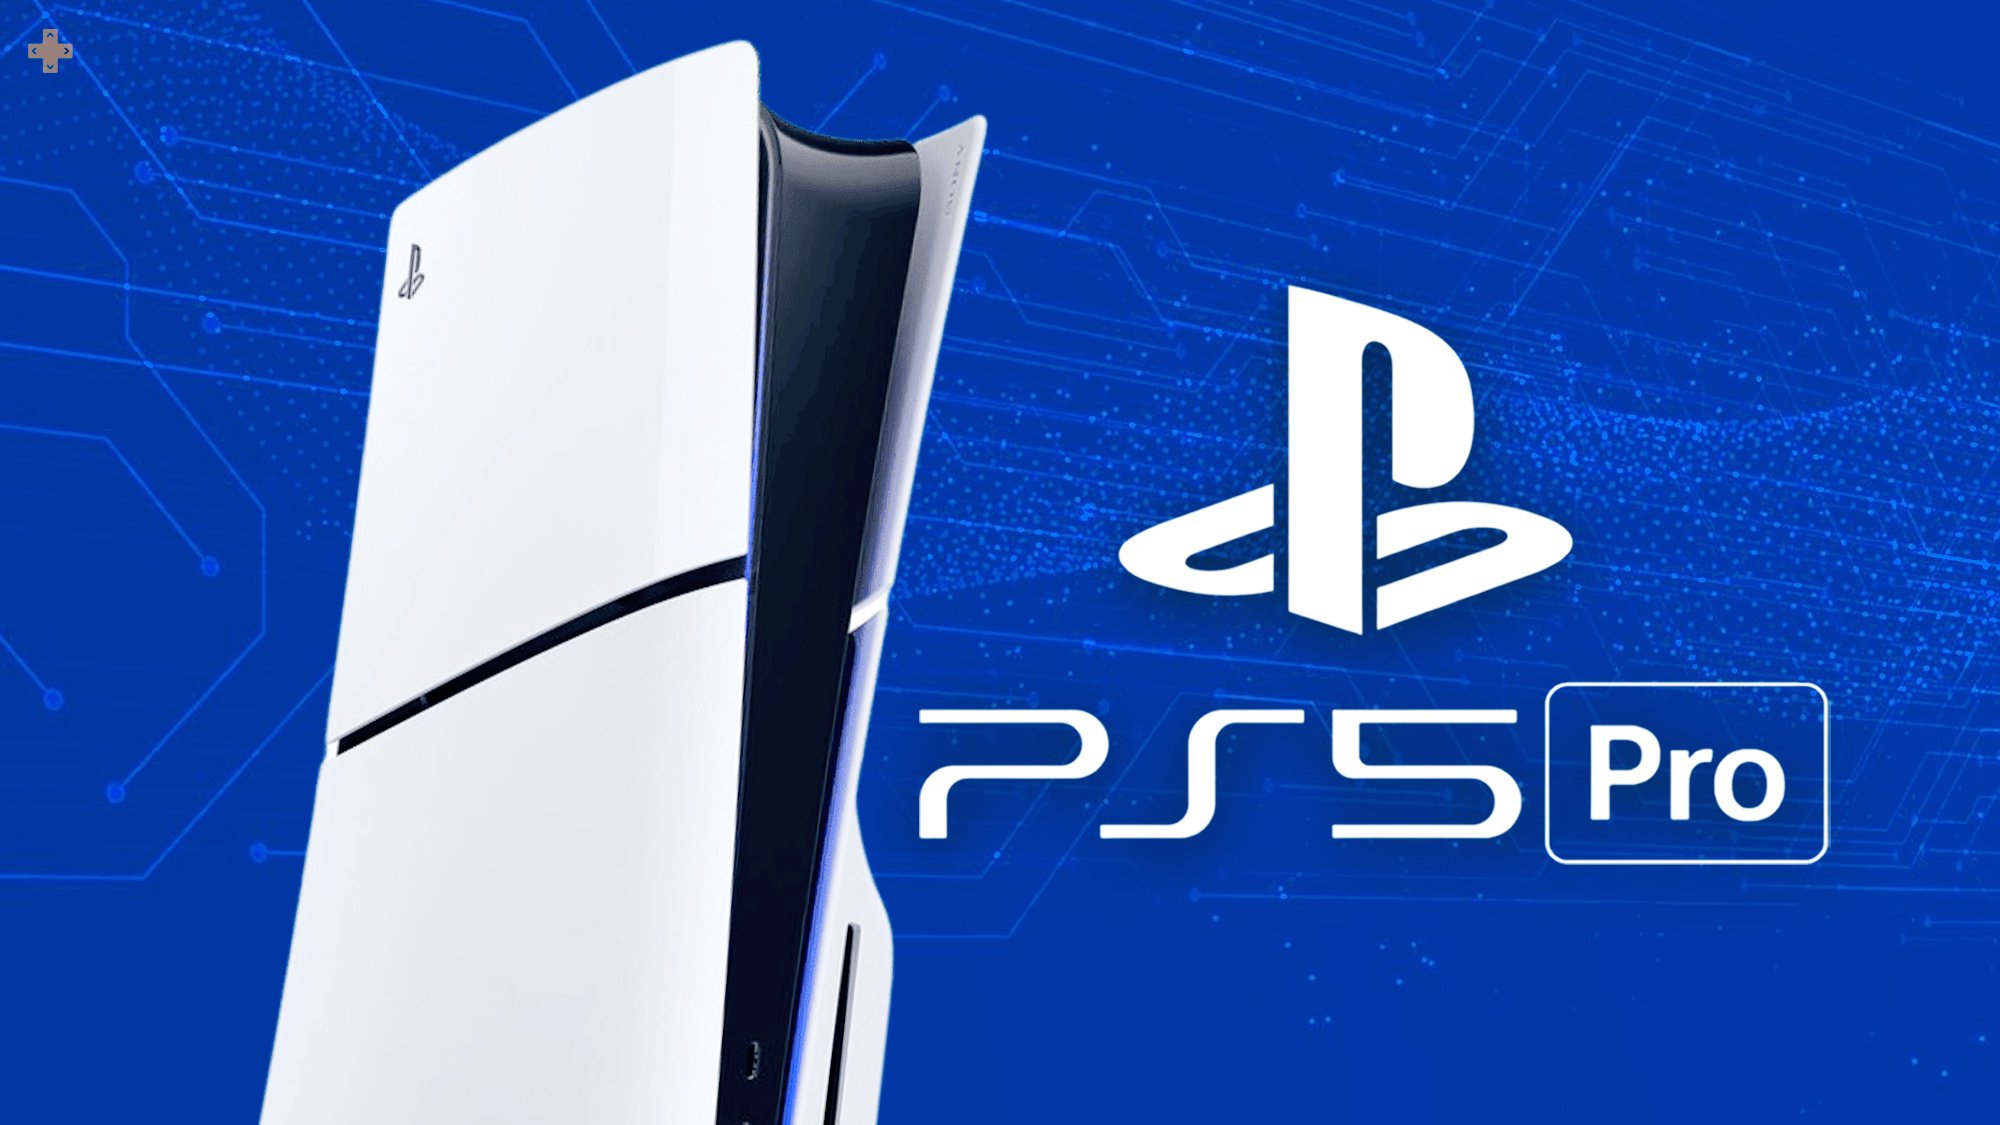 La PS5 Pro devrait bien être la console la plus puissante à ce jour